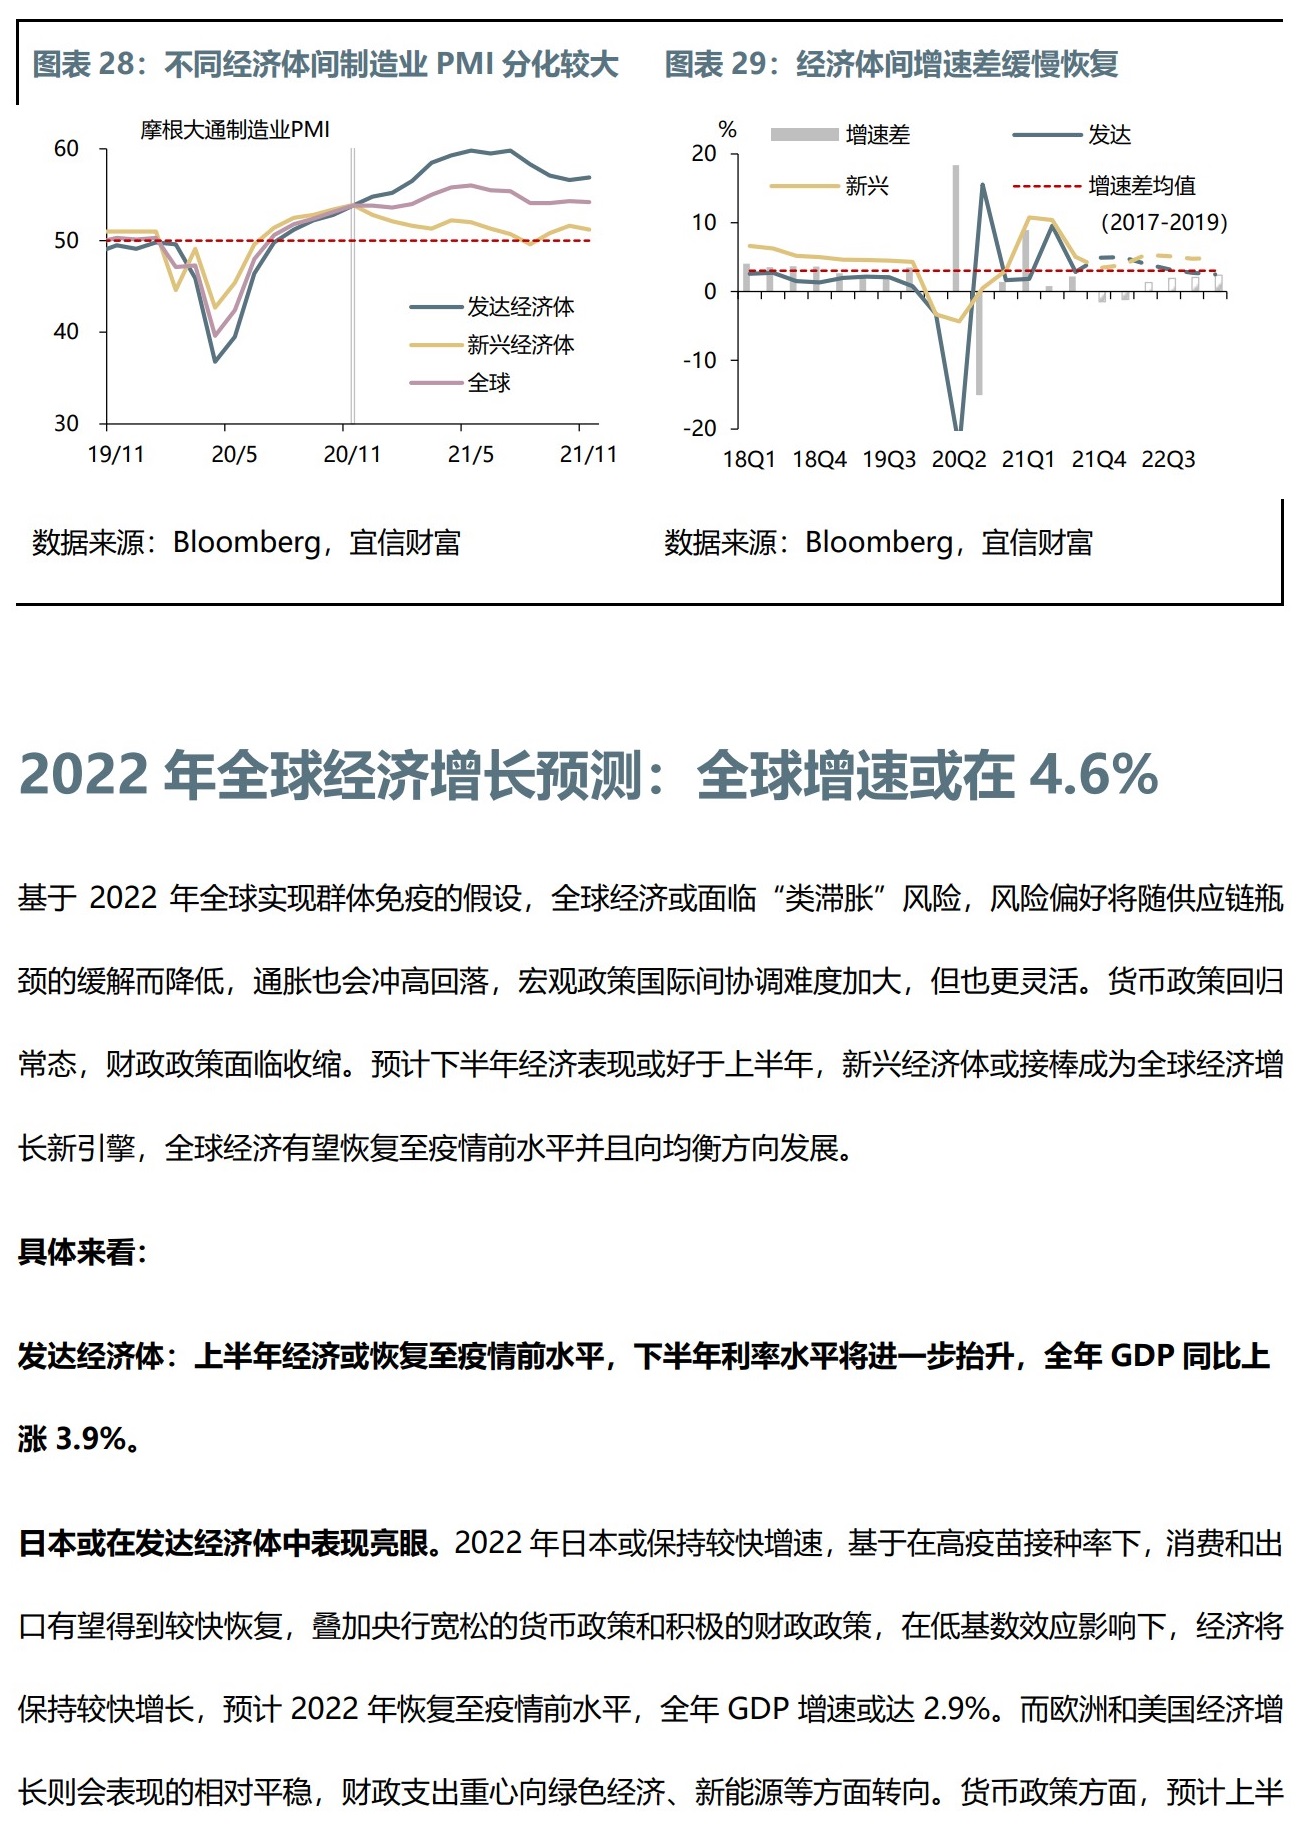 2022年资产配置策略指引-总览-全球经济 (1)_20.jpg